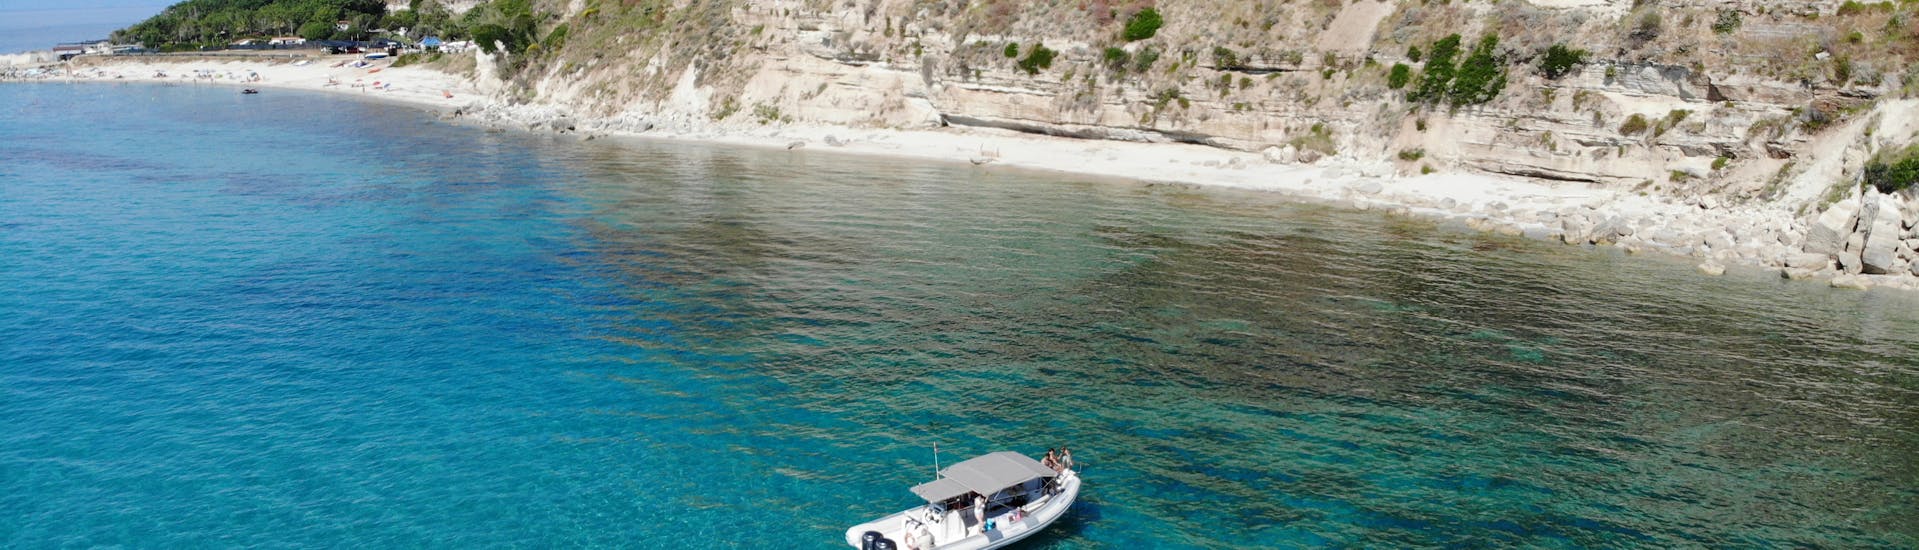 Boot van TropeaSub van bovenaf gezien tijdens de privé RIB boottocht van Tropea naar Capo Vaticano met snorkelen.